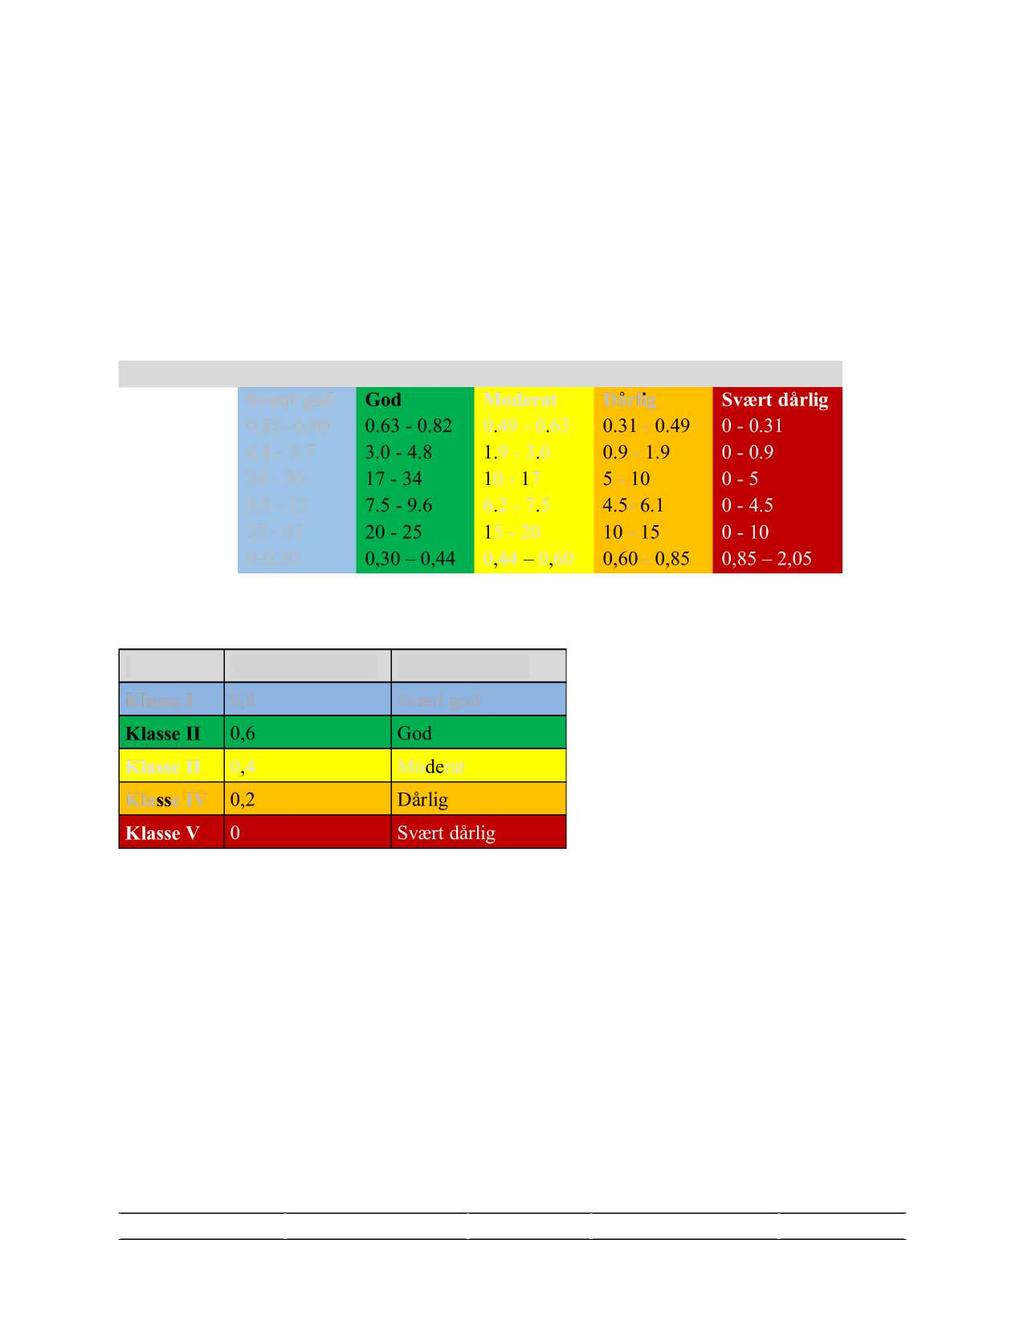 Vedlegg 2 - Referansetilstander med tilhørende tilstandsklasser. Fargene so m e r brukt i tabellene nedenfor (V2.1- V 2.